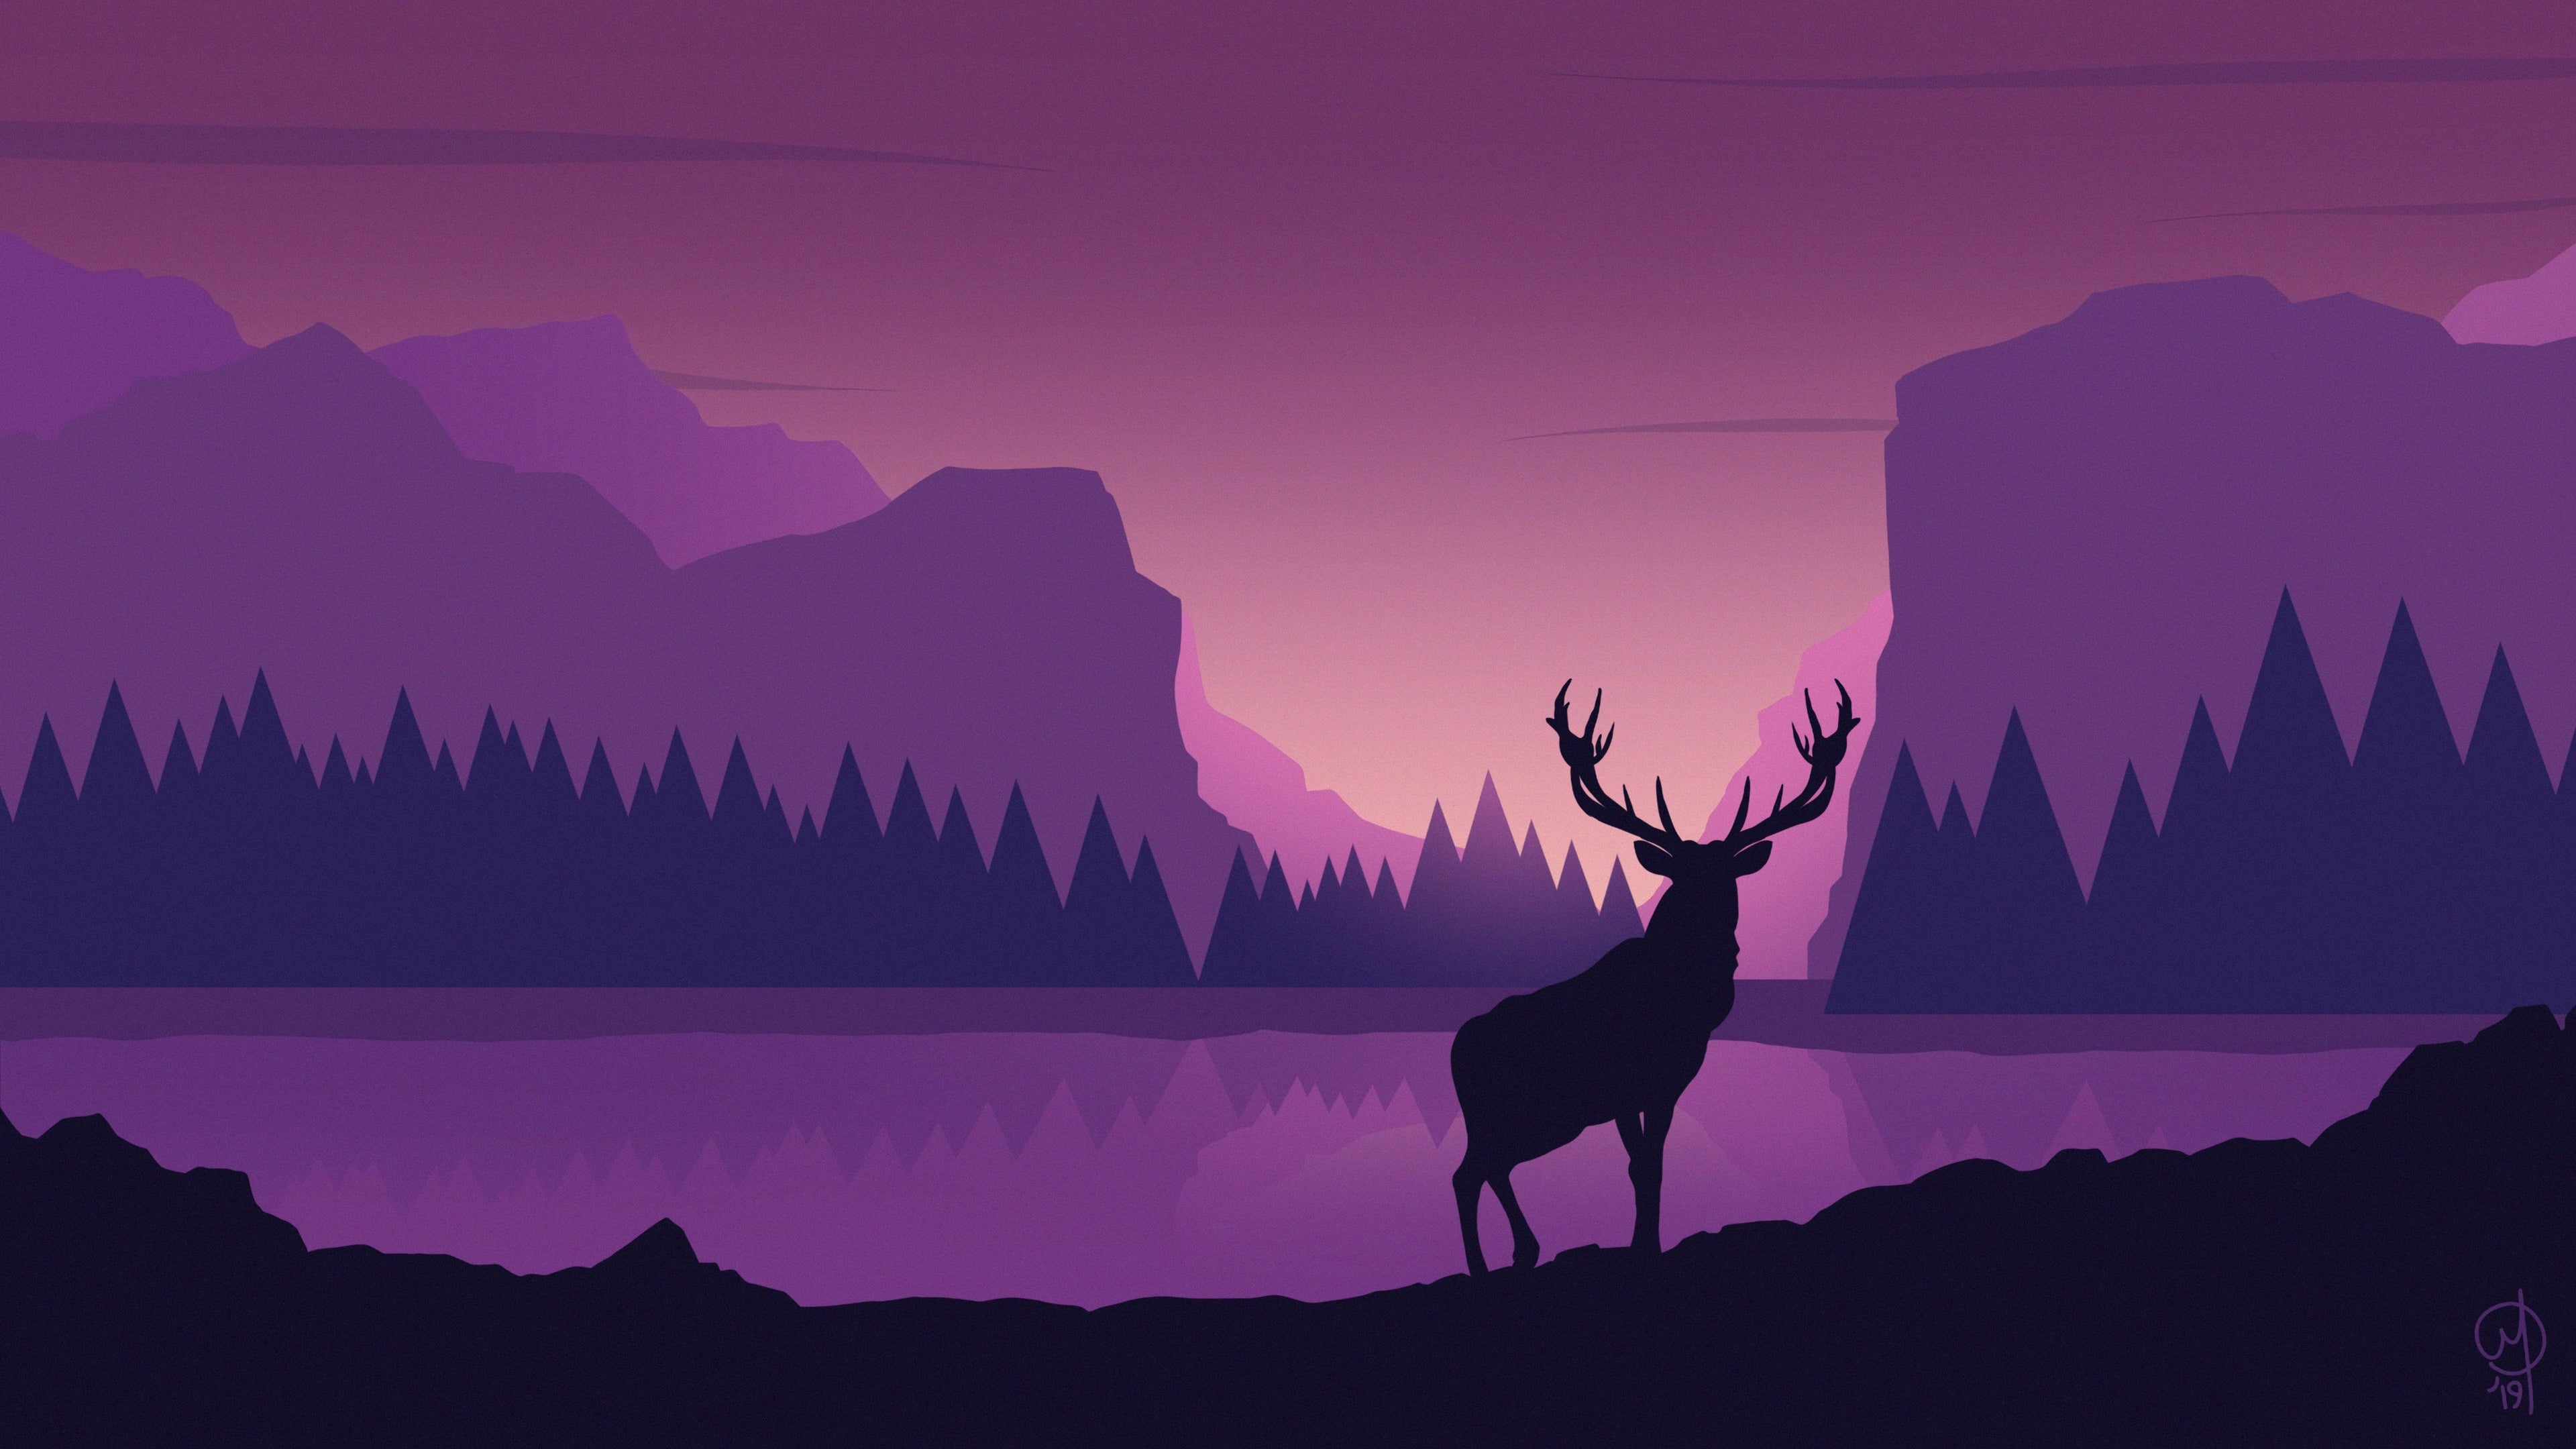 Deer 4K wallpapers for your desktop or